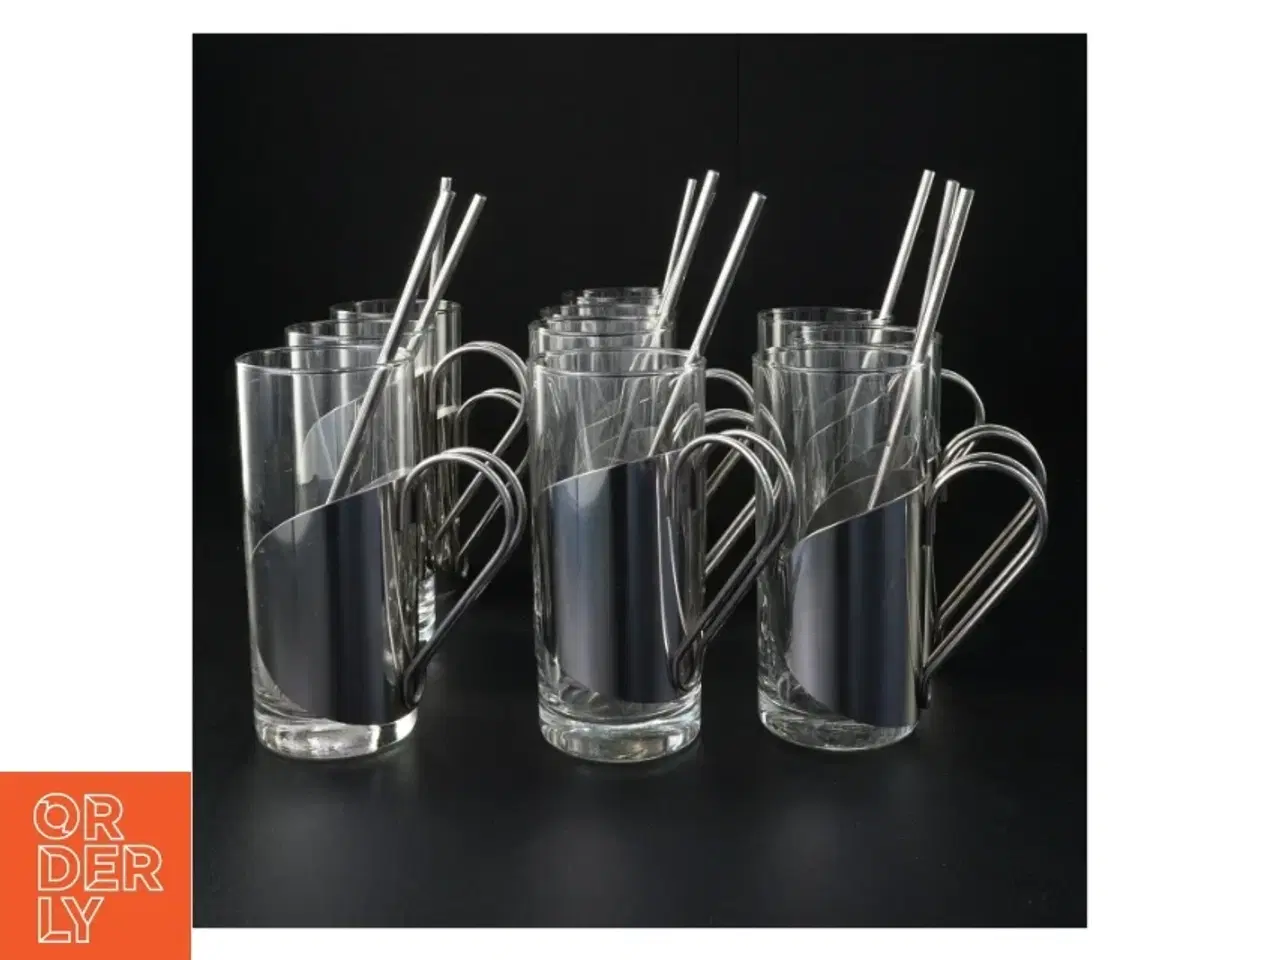 Billede 1 - 10 Glaskrus med metalsugerør, til gløgg eller irish coffee (str. 13 x 6 cm)